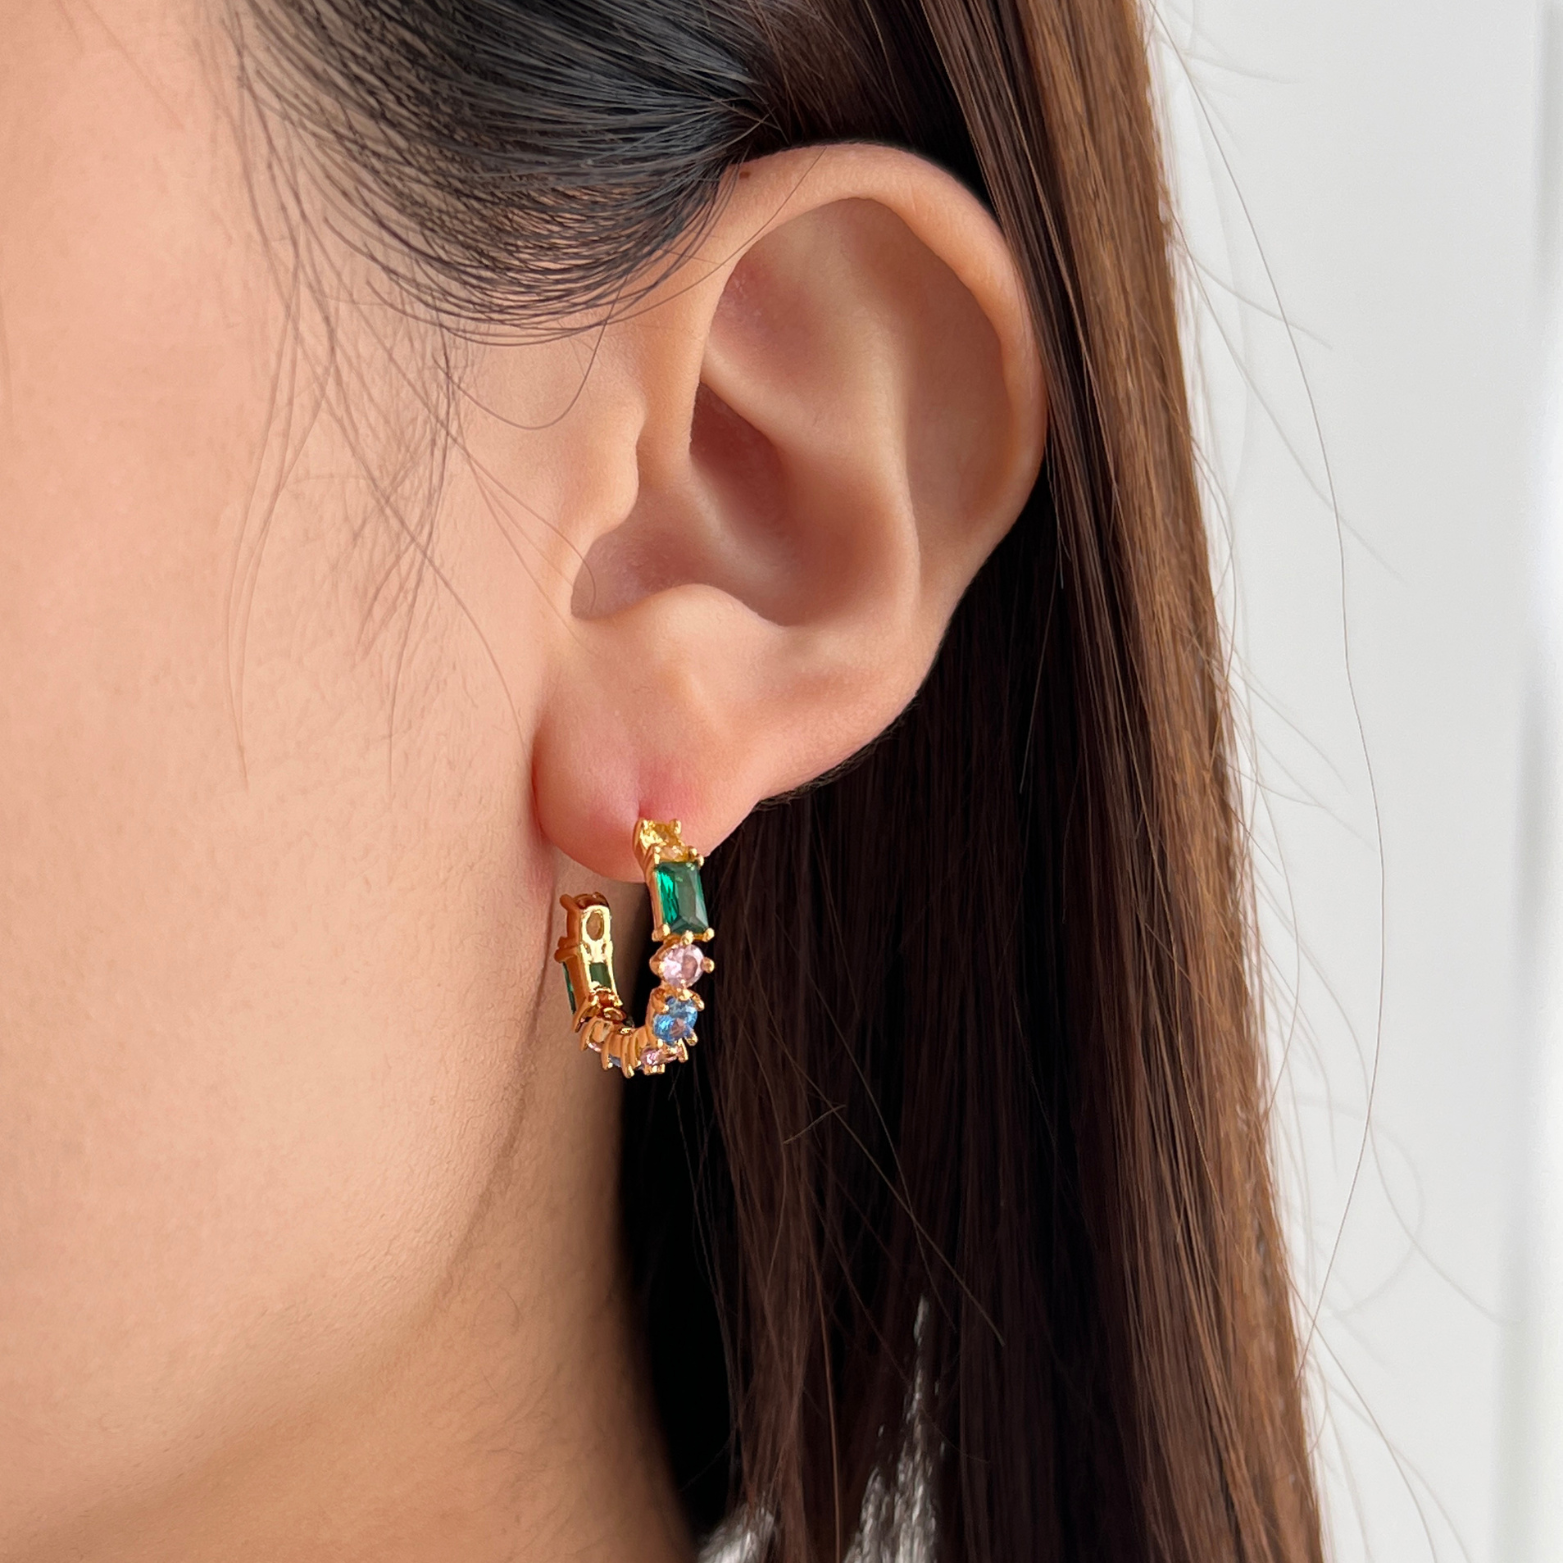 Yeo-wang 18k Gold Vermeil Earrings on models ear- KORYANGS Brand